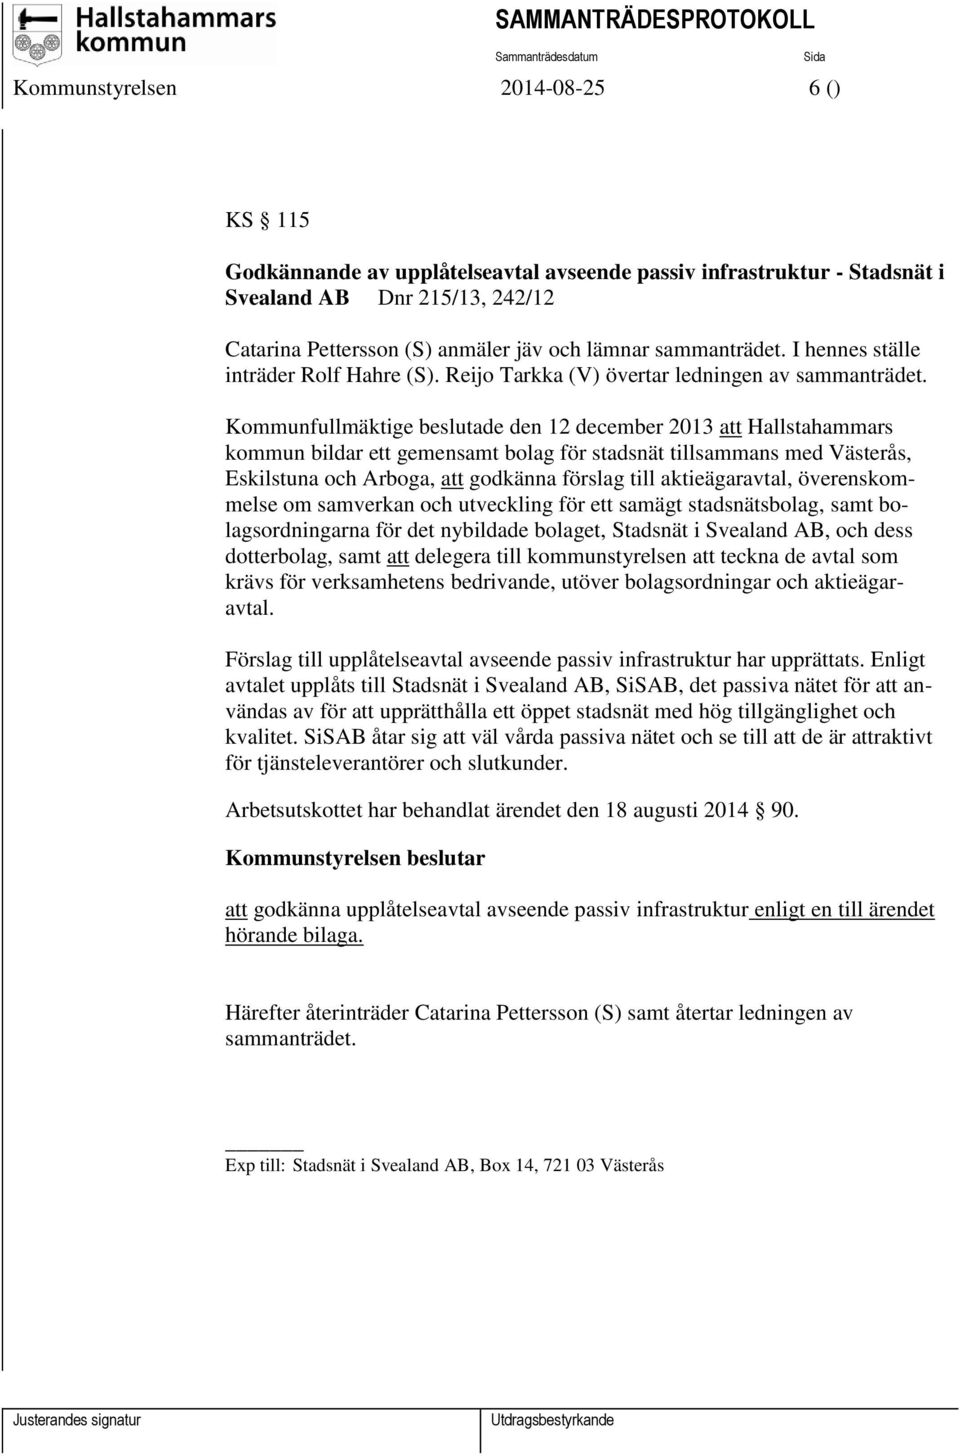 Kommunfullmäktige beslutade den 12 december 2013 att Hallstahammars kommun bildar ett gemensamt bolag för stadsnät tillsammans med Västerås, Eskilstuna och Arboga, att godkänna förslag till